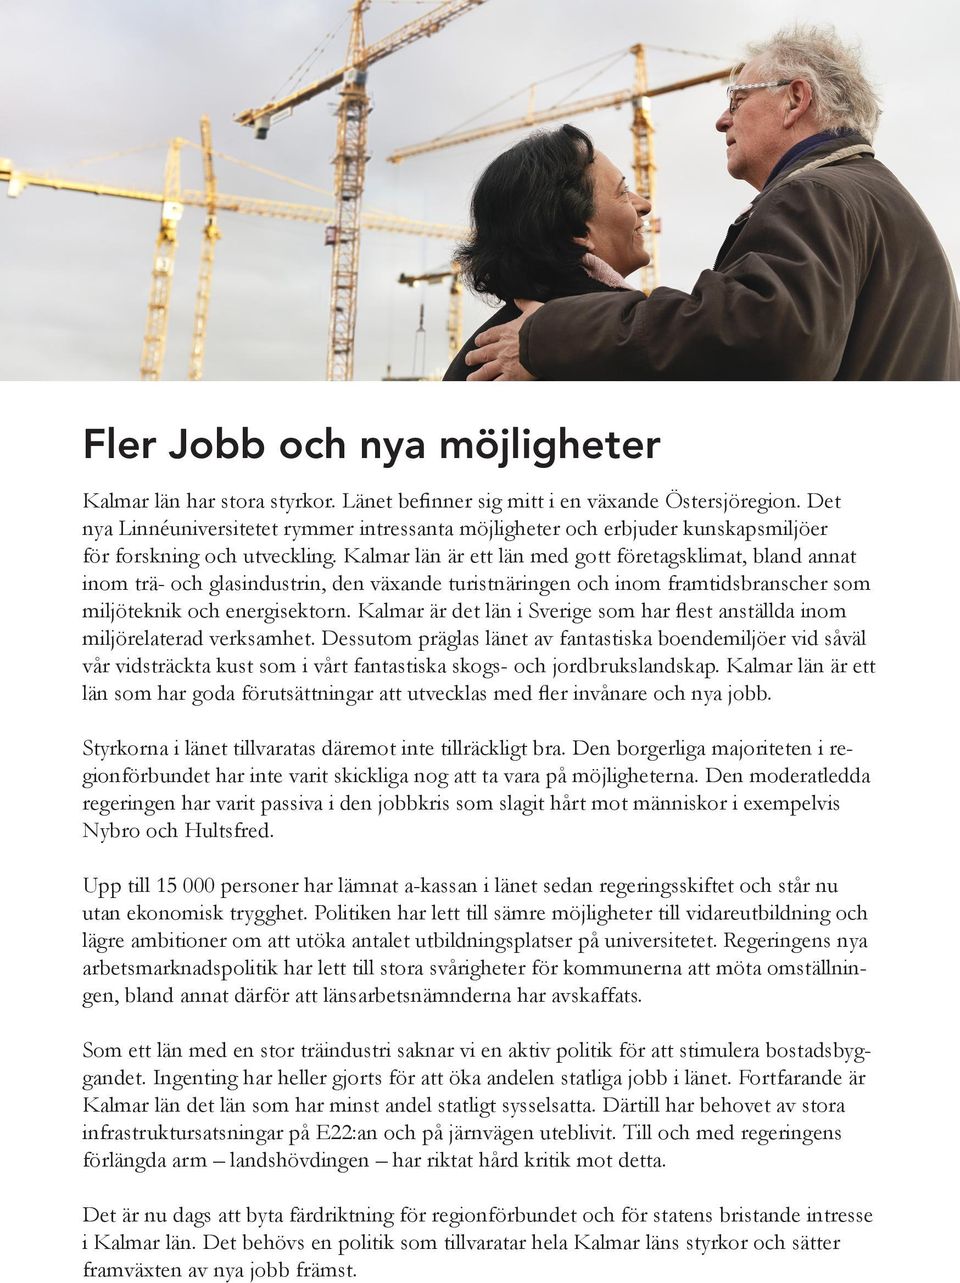 Kalmar län är ett län med gott företagsklimat, bland annat inom trä- och glasindustrin, den växande turistnäringen och inom framtidsbranscher som miljöteknik och energisektorn.